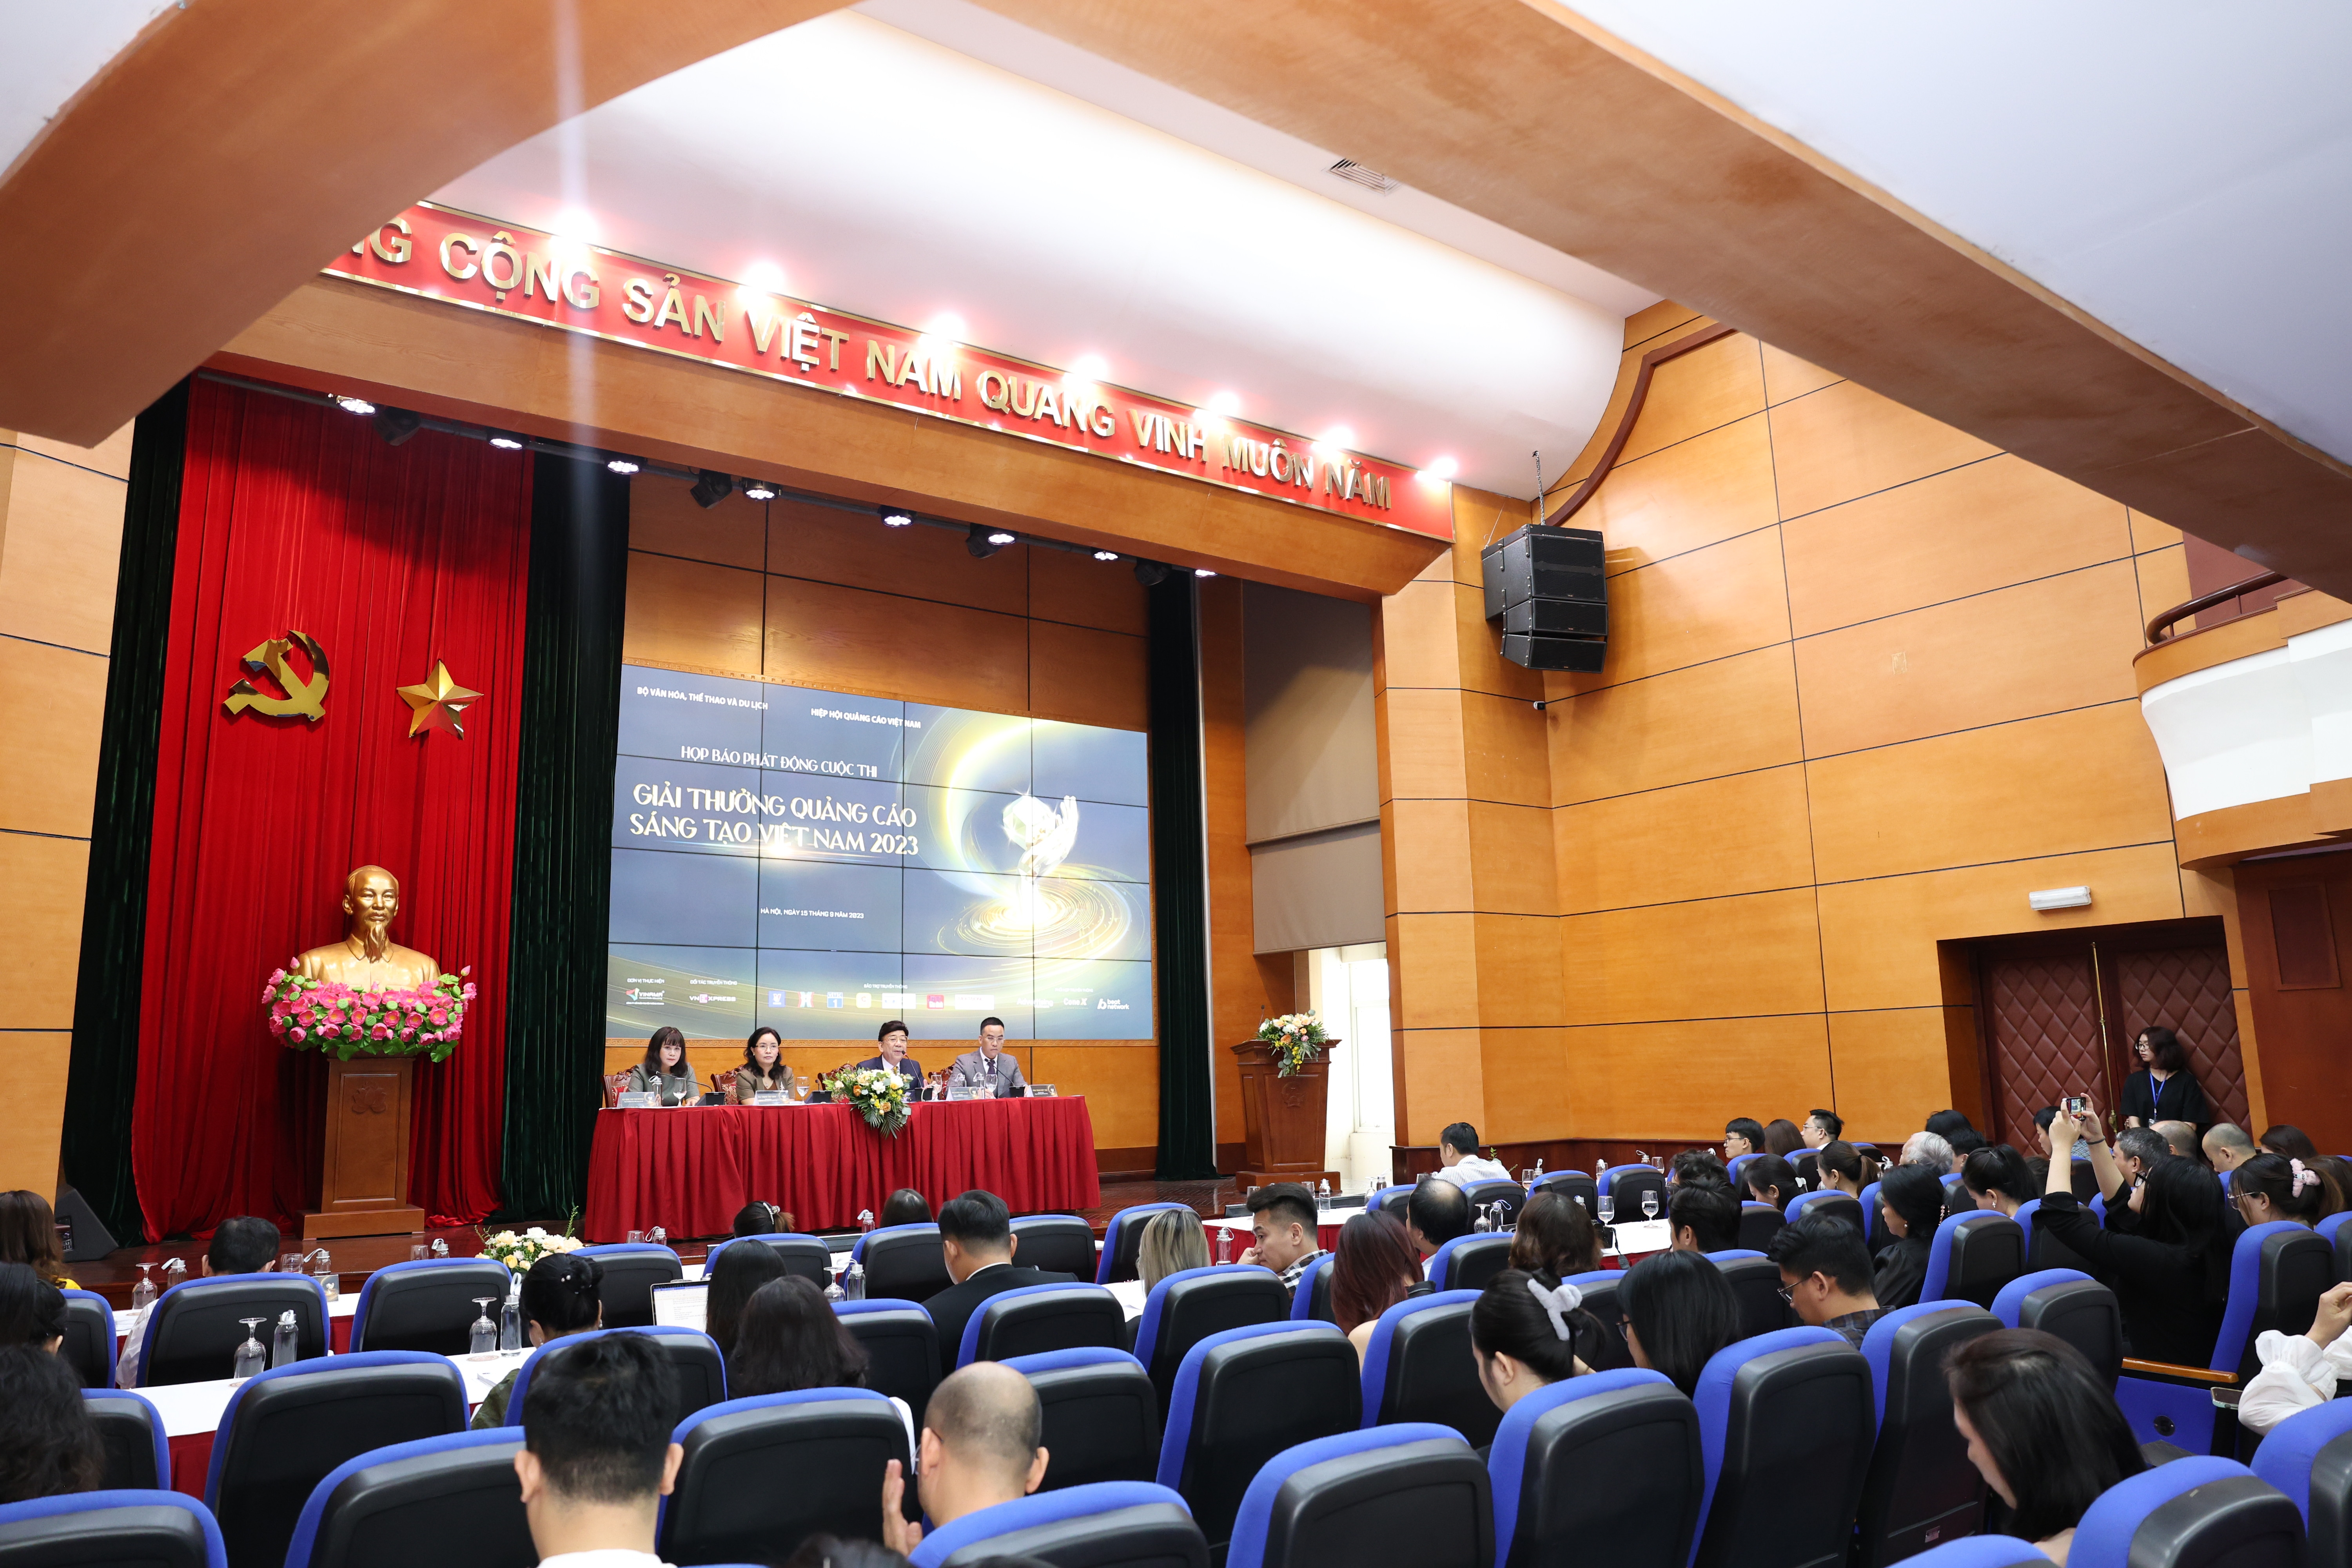 Phát động Giải thưởng Quảng cáo sáng tạo Việt Nam năm 2023